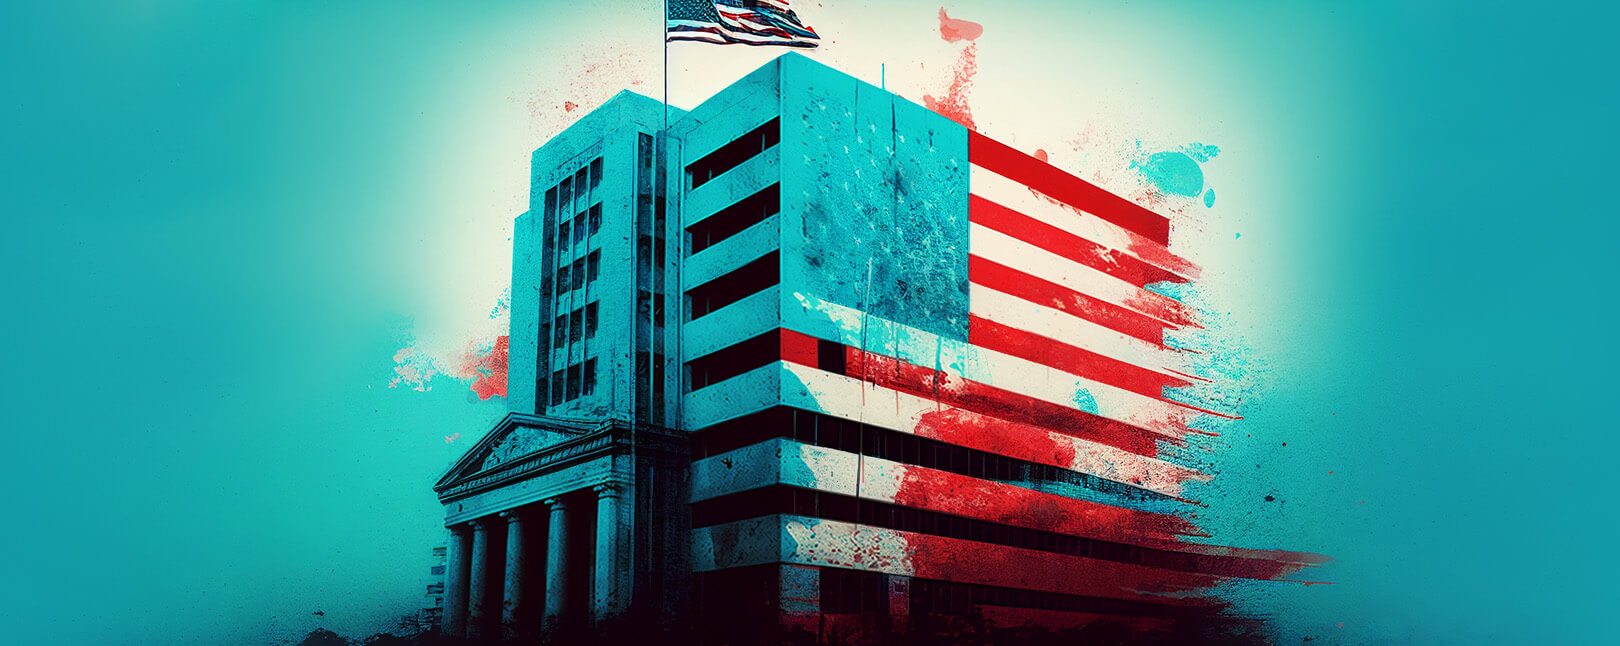 Bank of America disputes